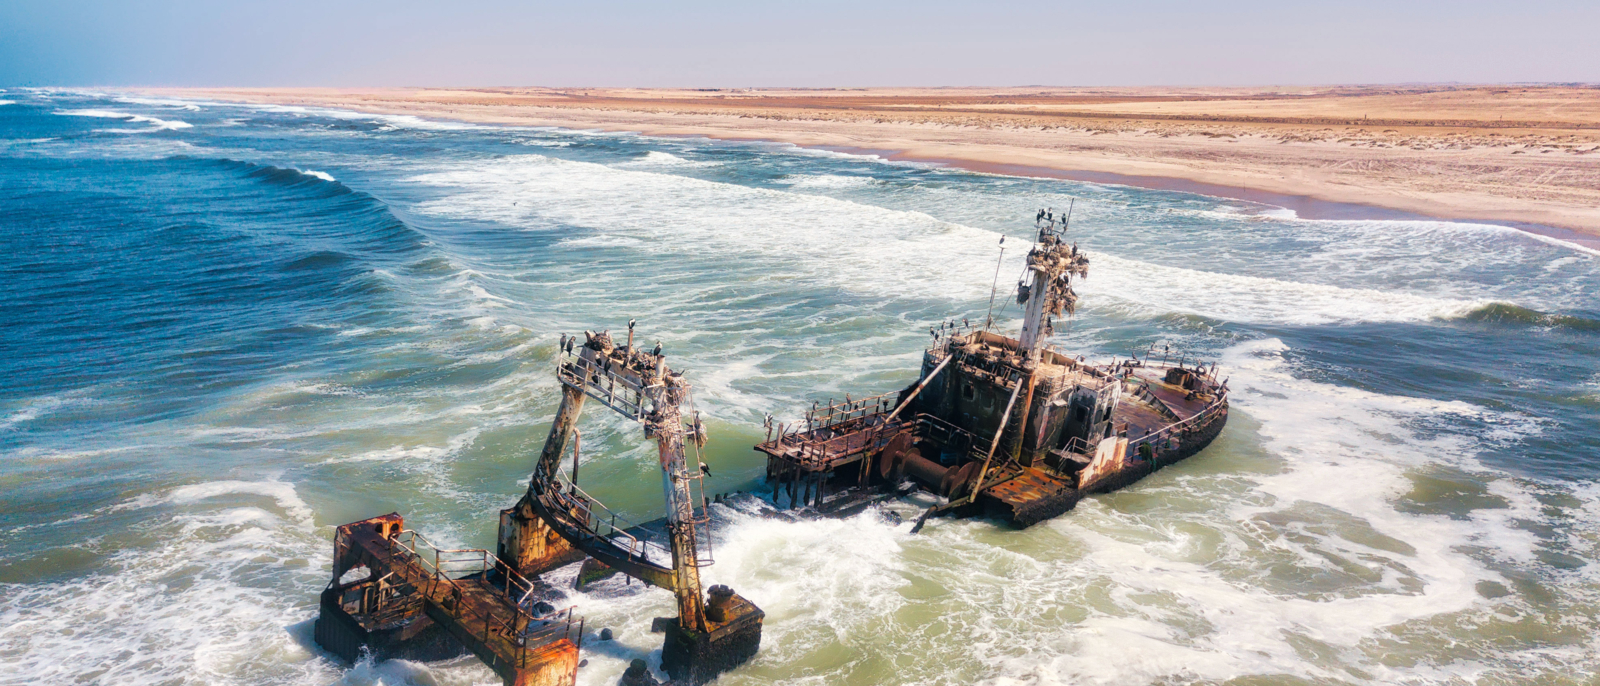 Epave le long de la côte de Skeleton dans l'ouest de la Namibie prise en janvier 2018